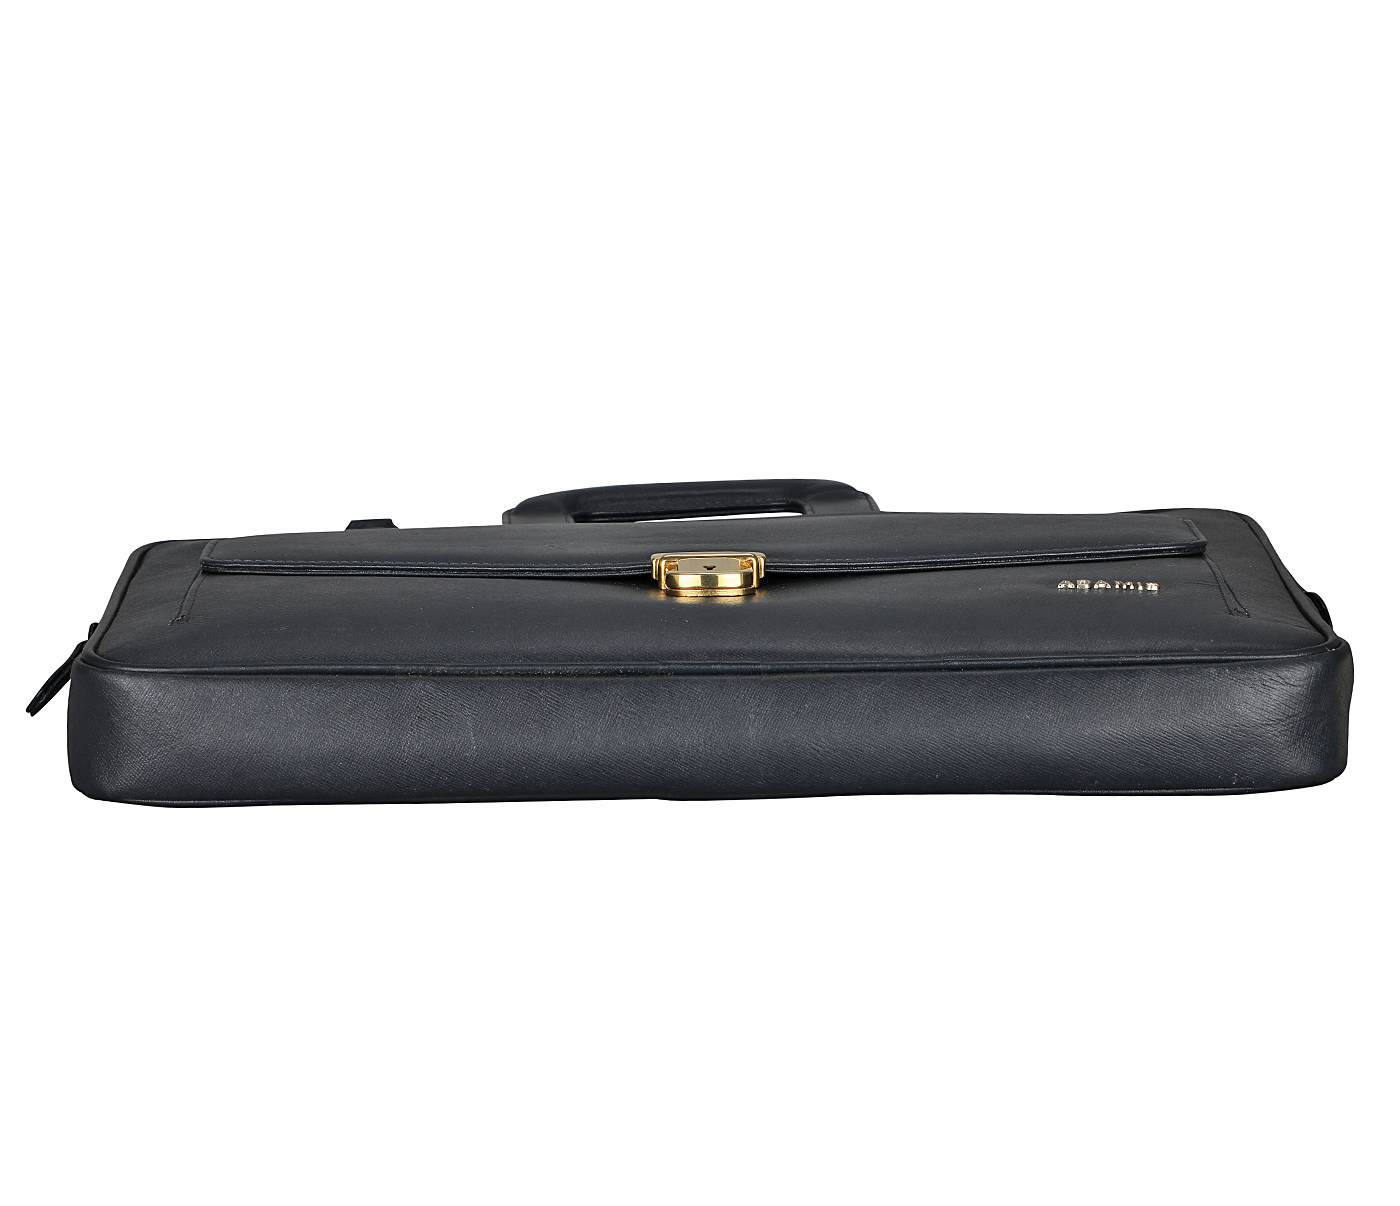 F74-Ferran-Laptop cum portfolio slim bag in Genuine Leather - Blue